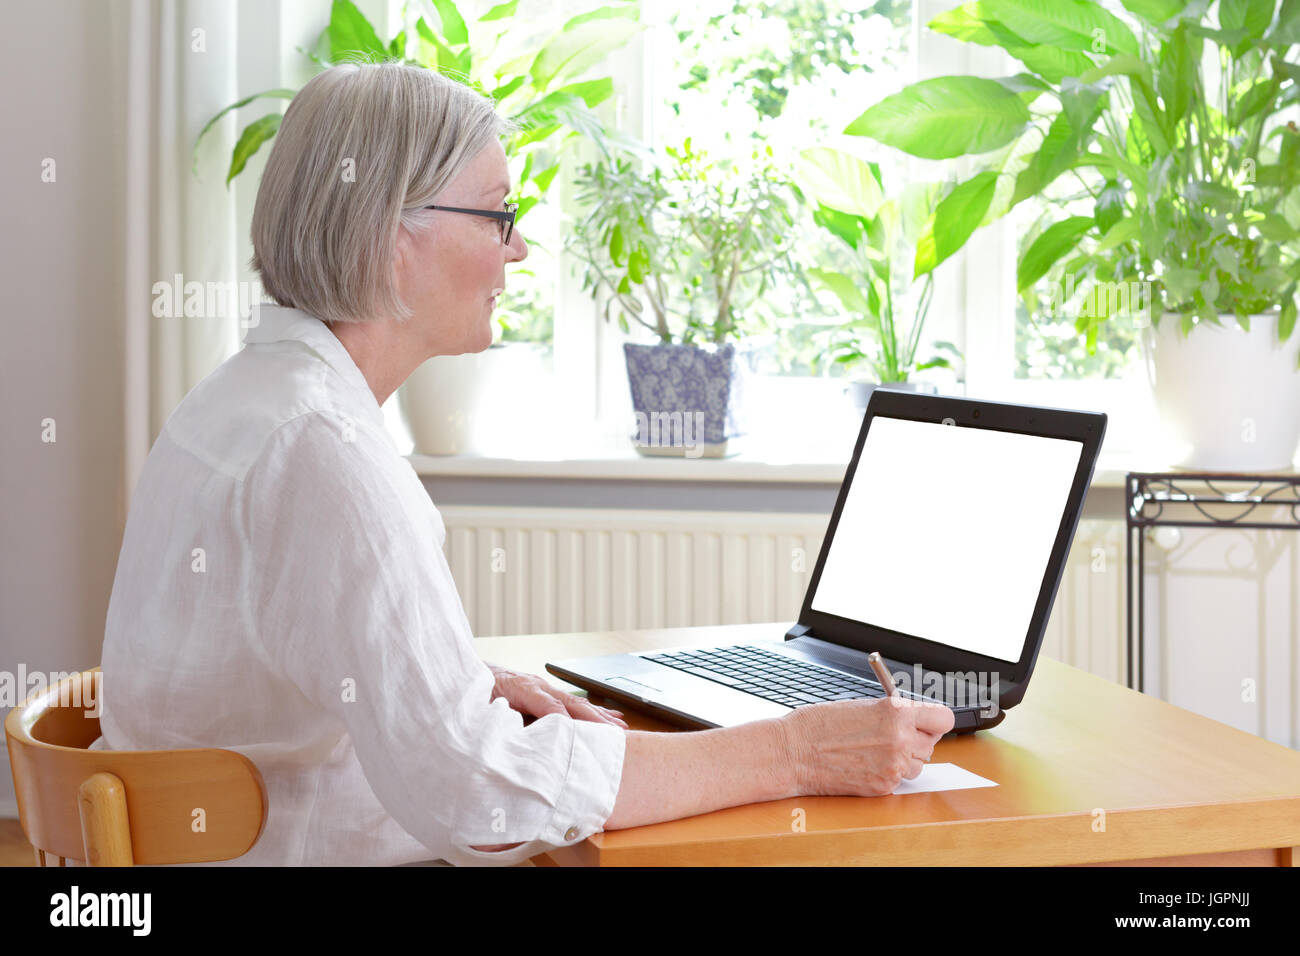 Ältere Frau zu Hause vor ihrem Laptop Notizen, online Beratung oder e-Learning - Konzept Vorlage, weißer Bildschirm, Kopie Raum Stockfoto